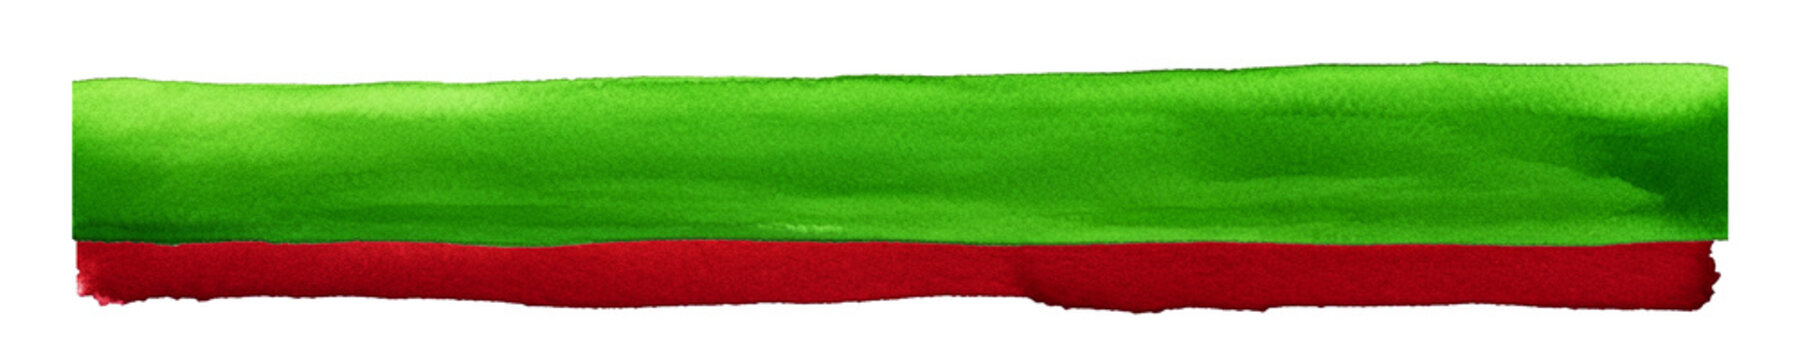 Fototapeta Dwa pasy. Farba akwarelowa zielony i czerwony. Świąteczne kolory. Transparentne tło.